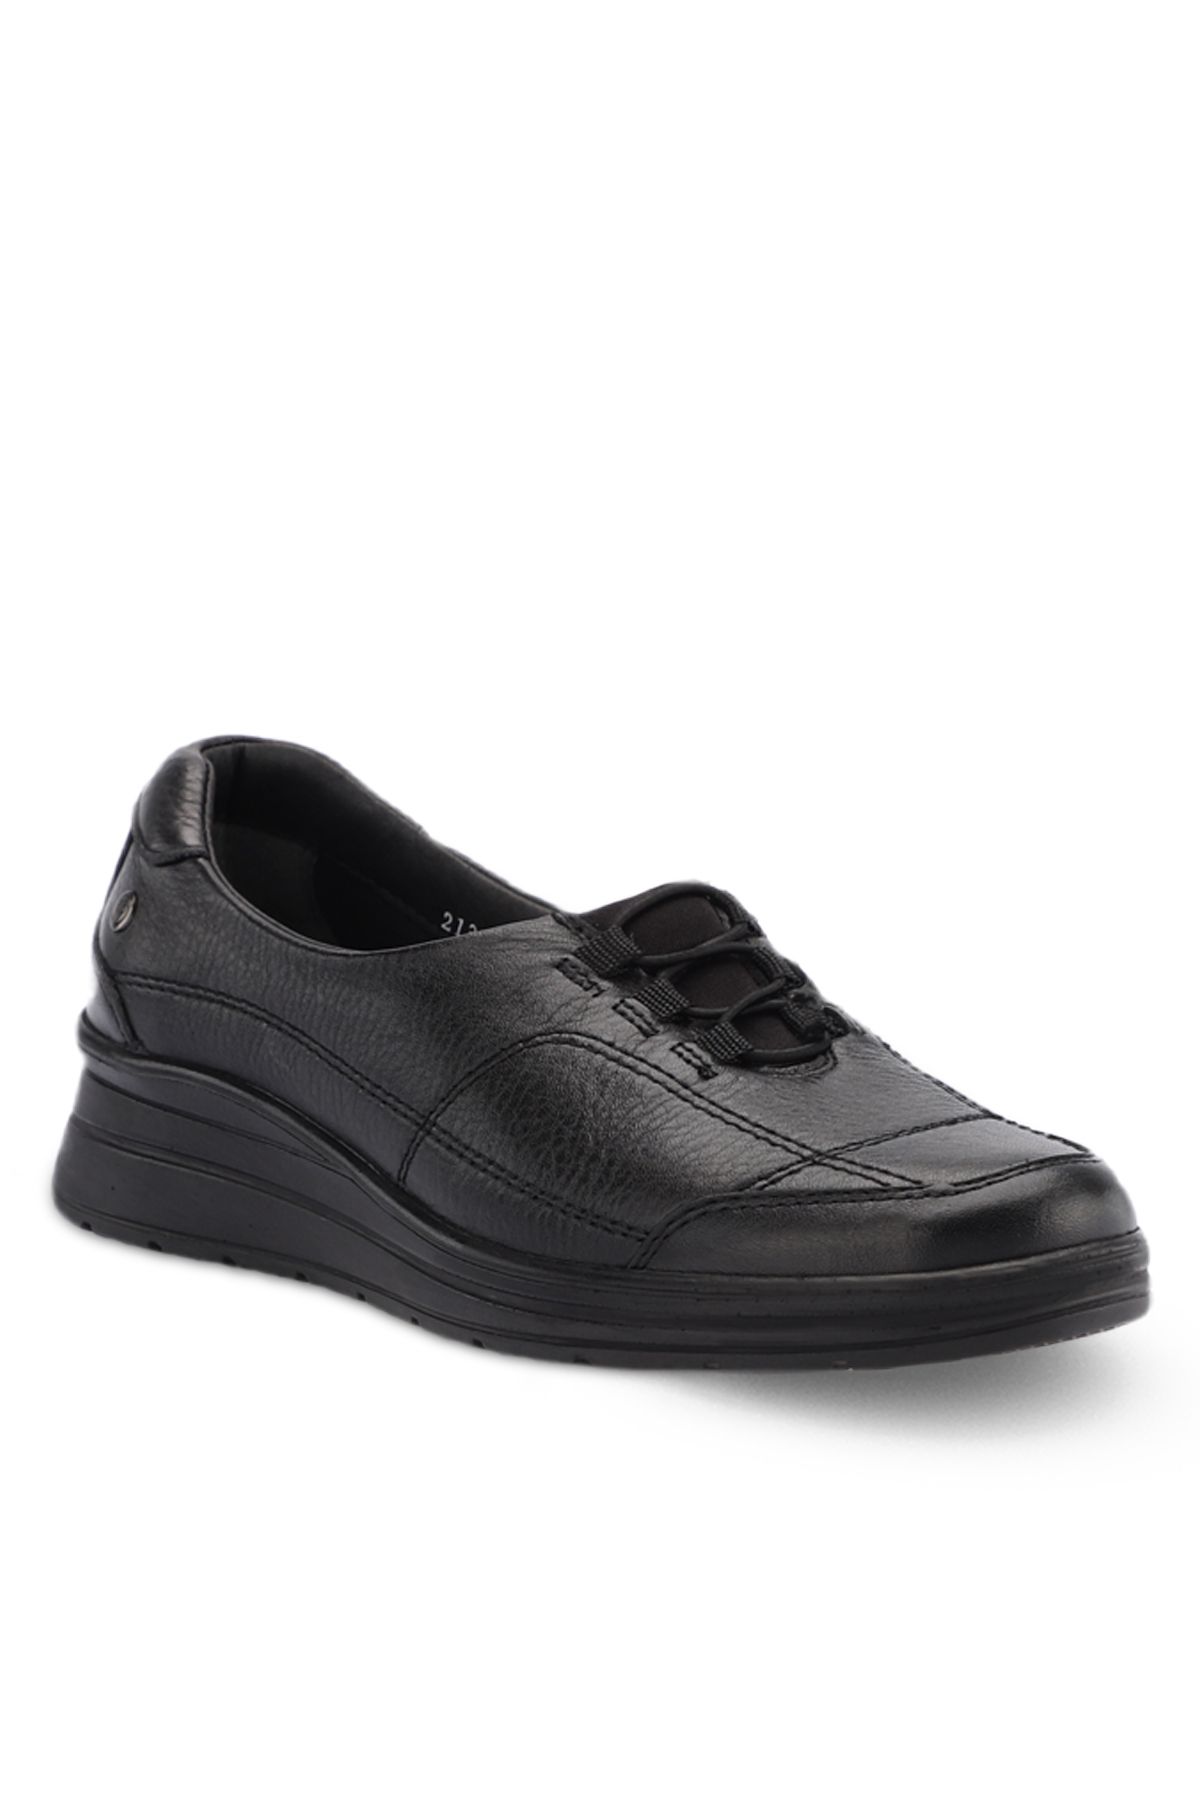 Forelli HEFA-H Comfort Kadın Ayakkabı Siyah